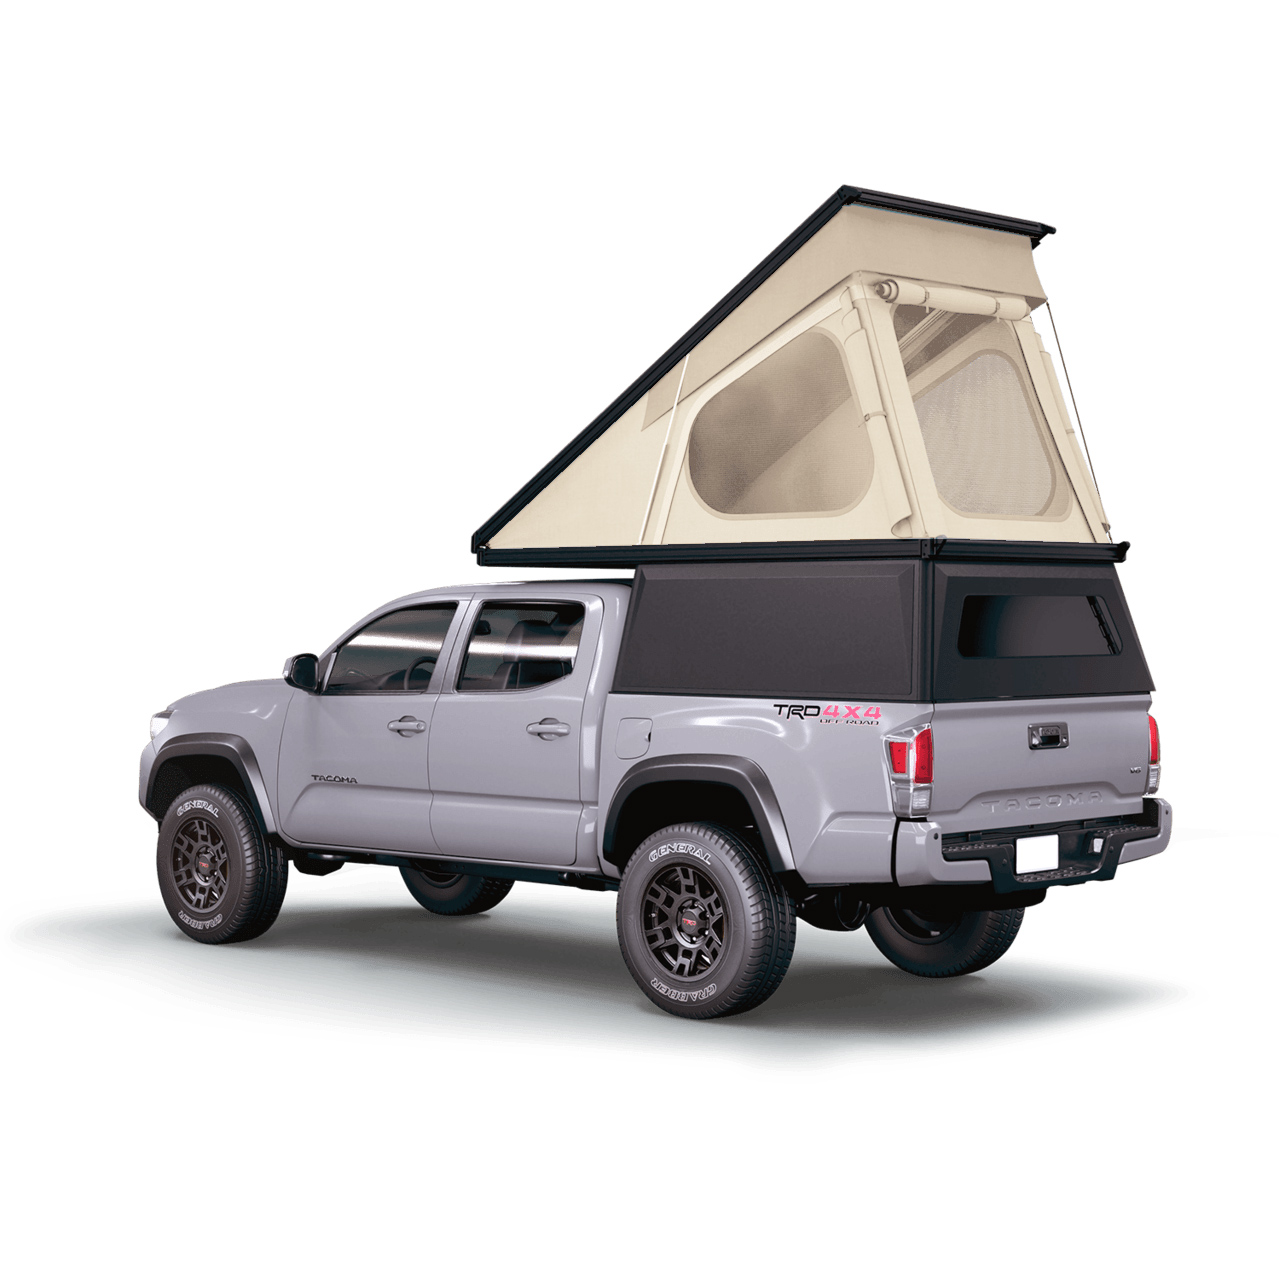 The Lightweight Pop-Top Truck Camper 